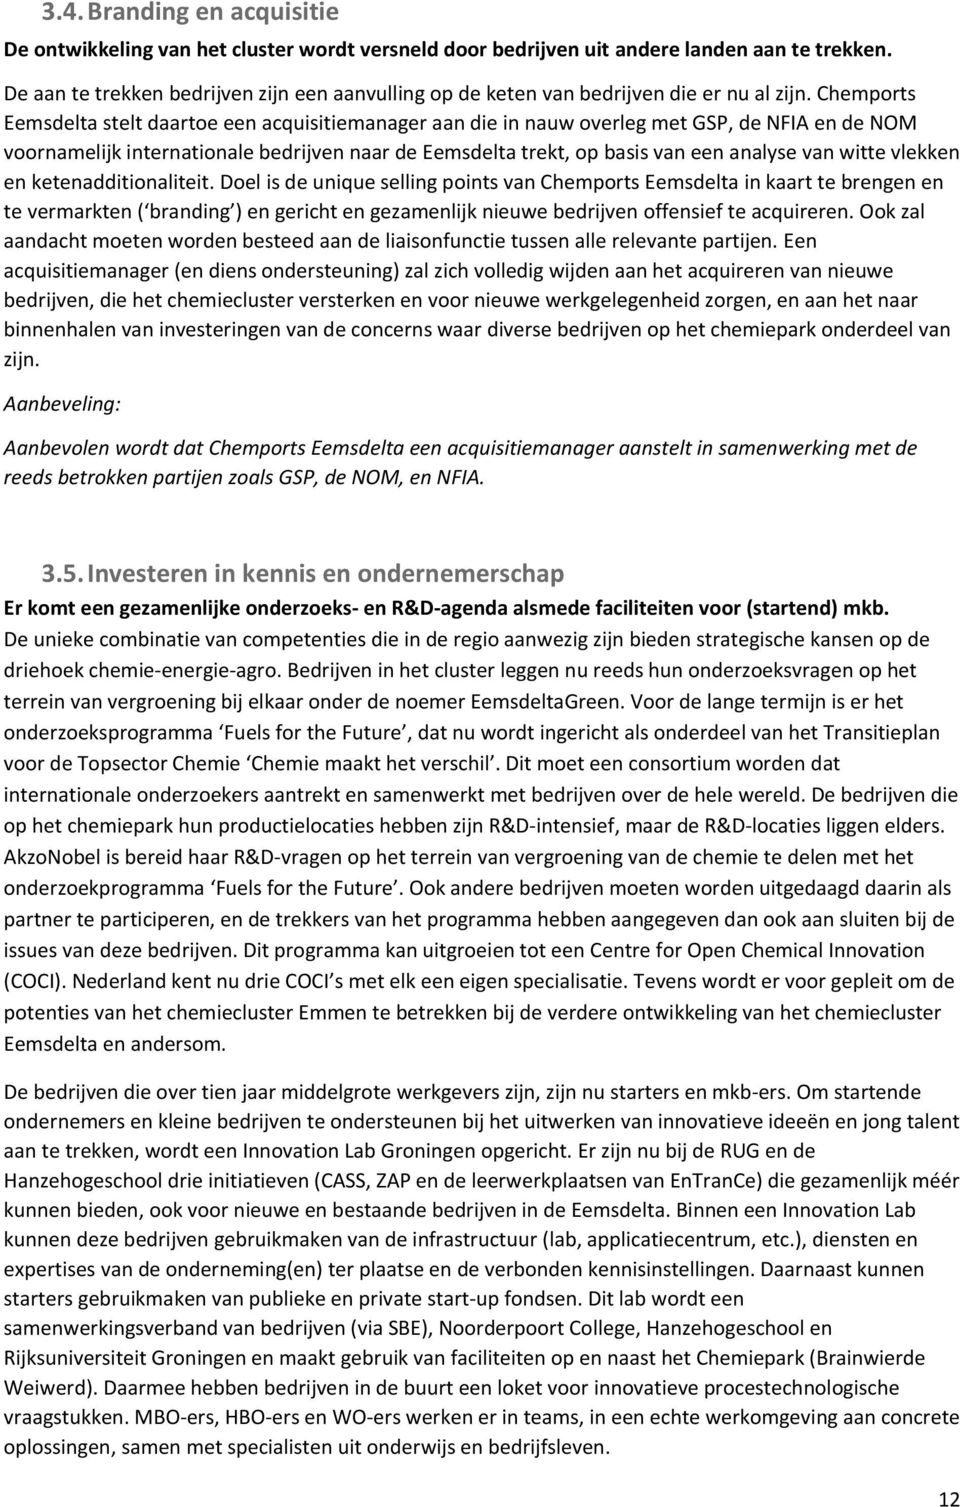 Chemports Eemsdelta stelt daartoe een acquisitiemanager aan die in nauw overleg met GSP, de NFIA en de NOM voornamelijk internationale bedrijven naar de Eemsdelta trekt, op basis van een analyse van